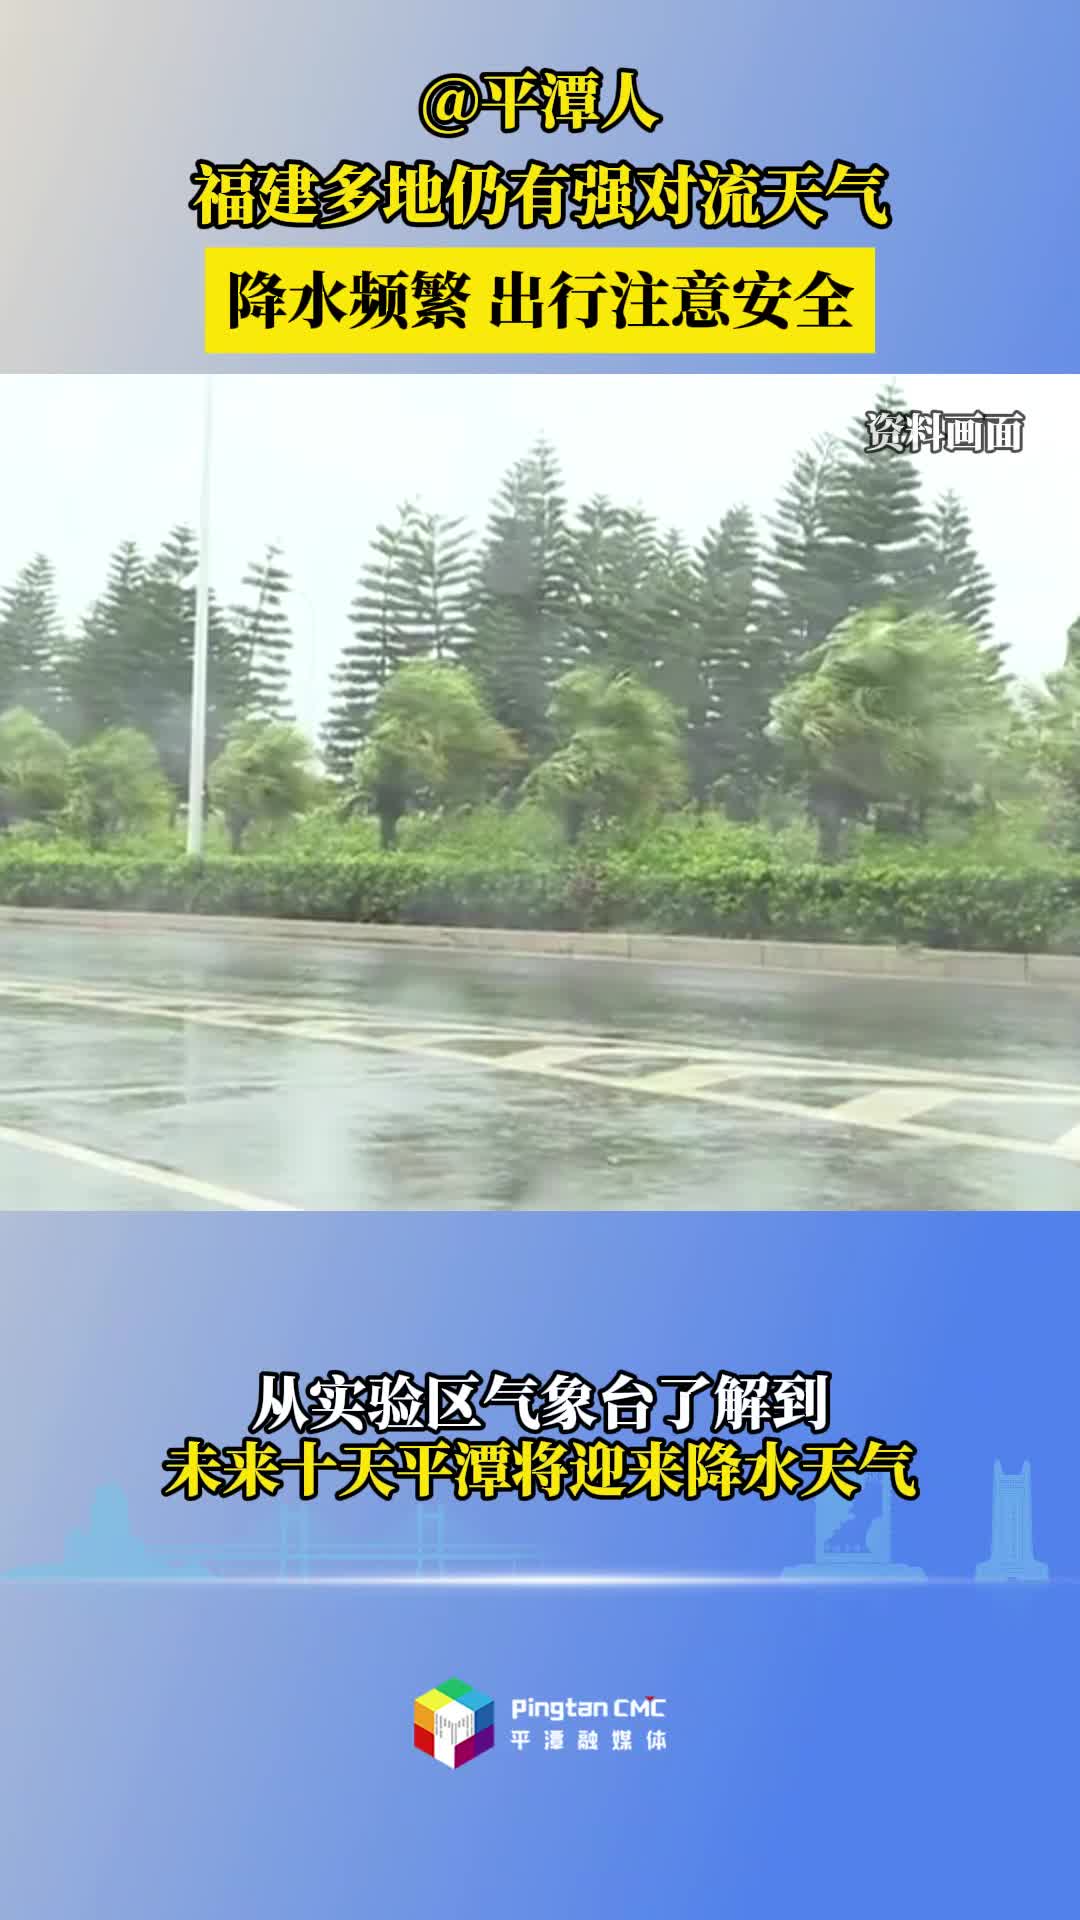 @平潭人，福建多地仍有强对流天气，降水频繁出行注意安全